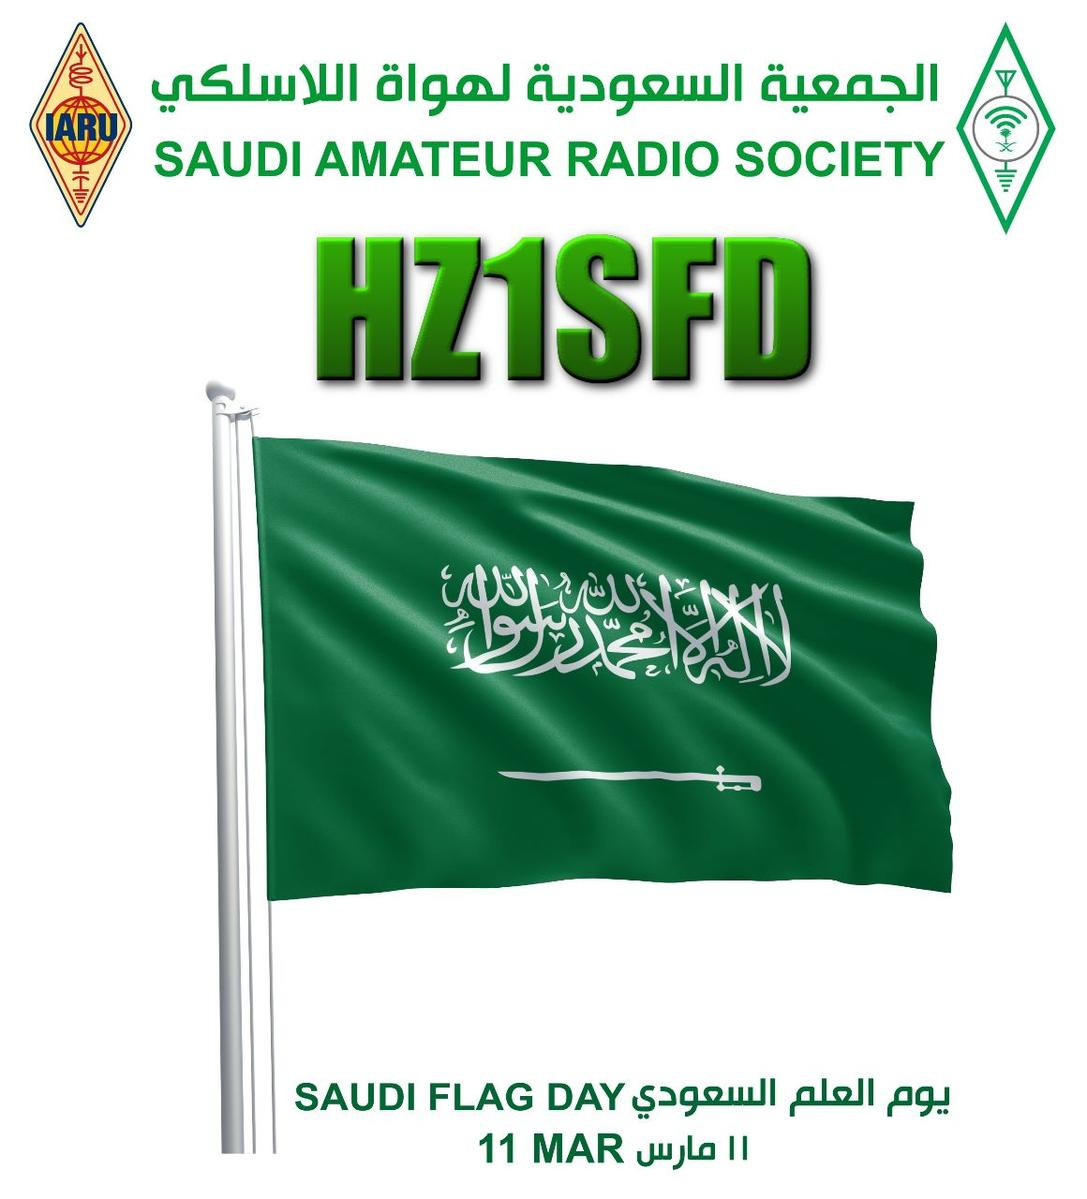 HZ1SFD Riyadh, Saudi Arabia